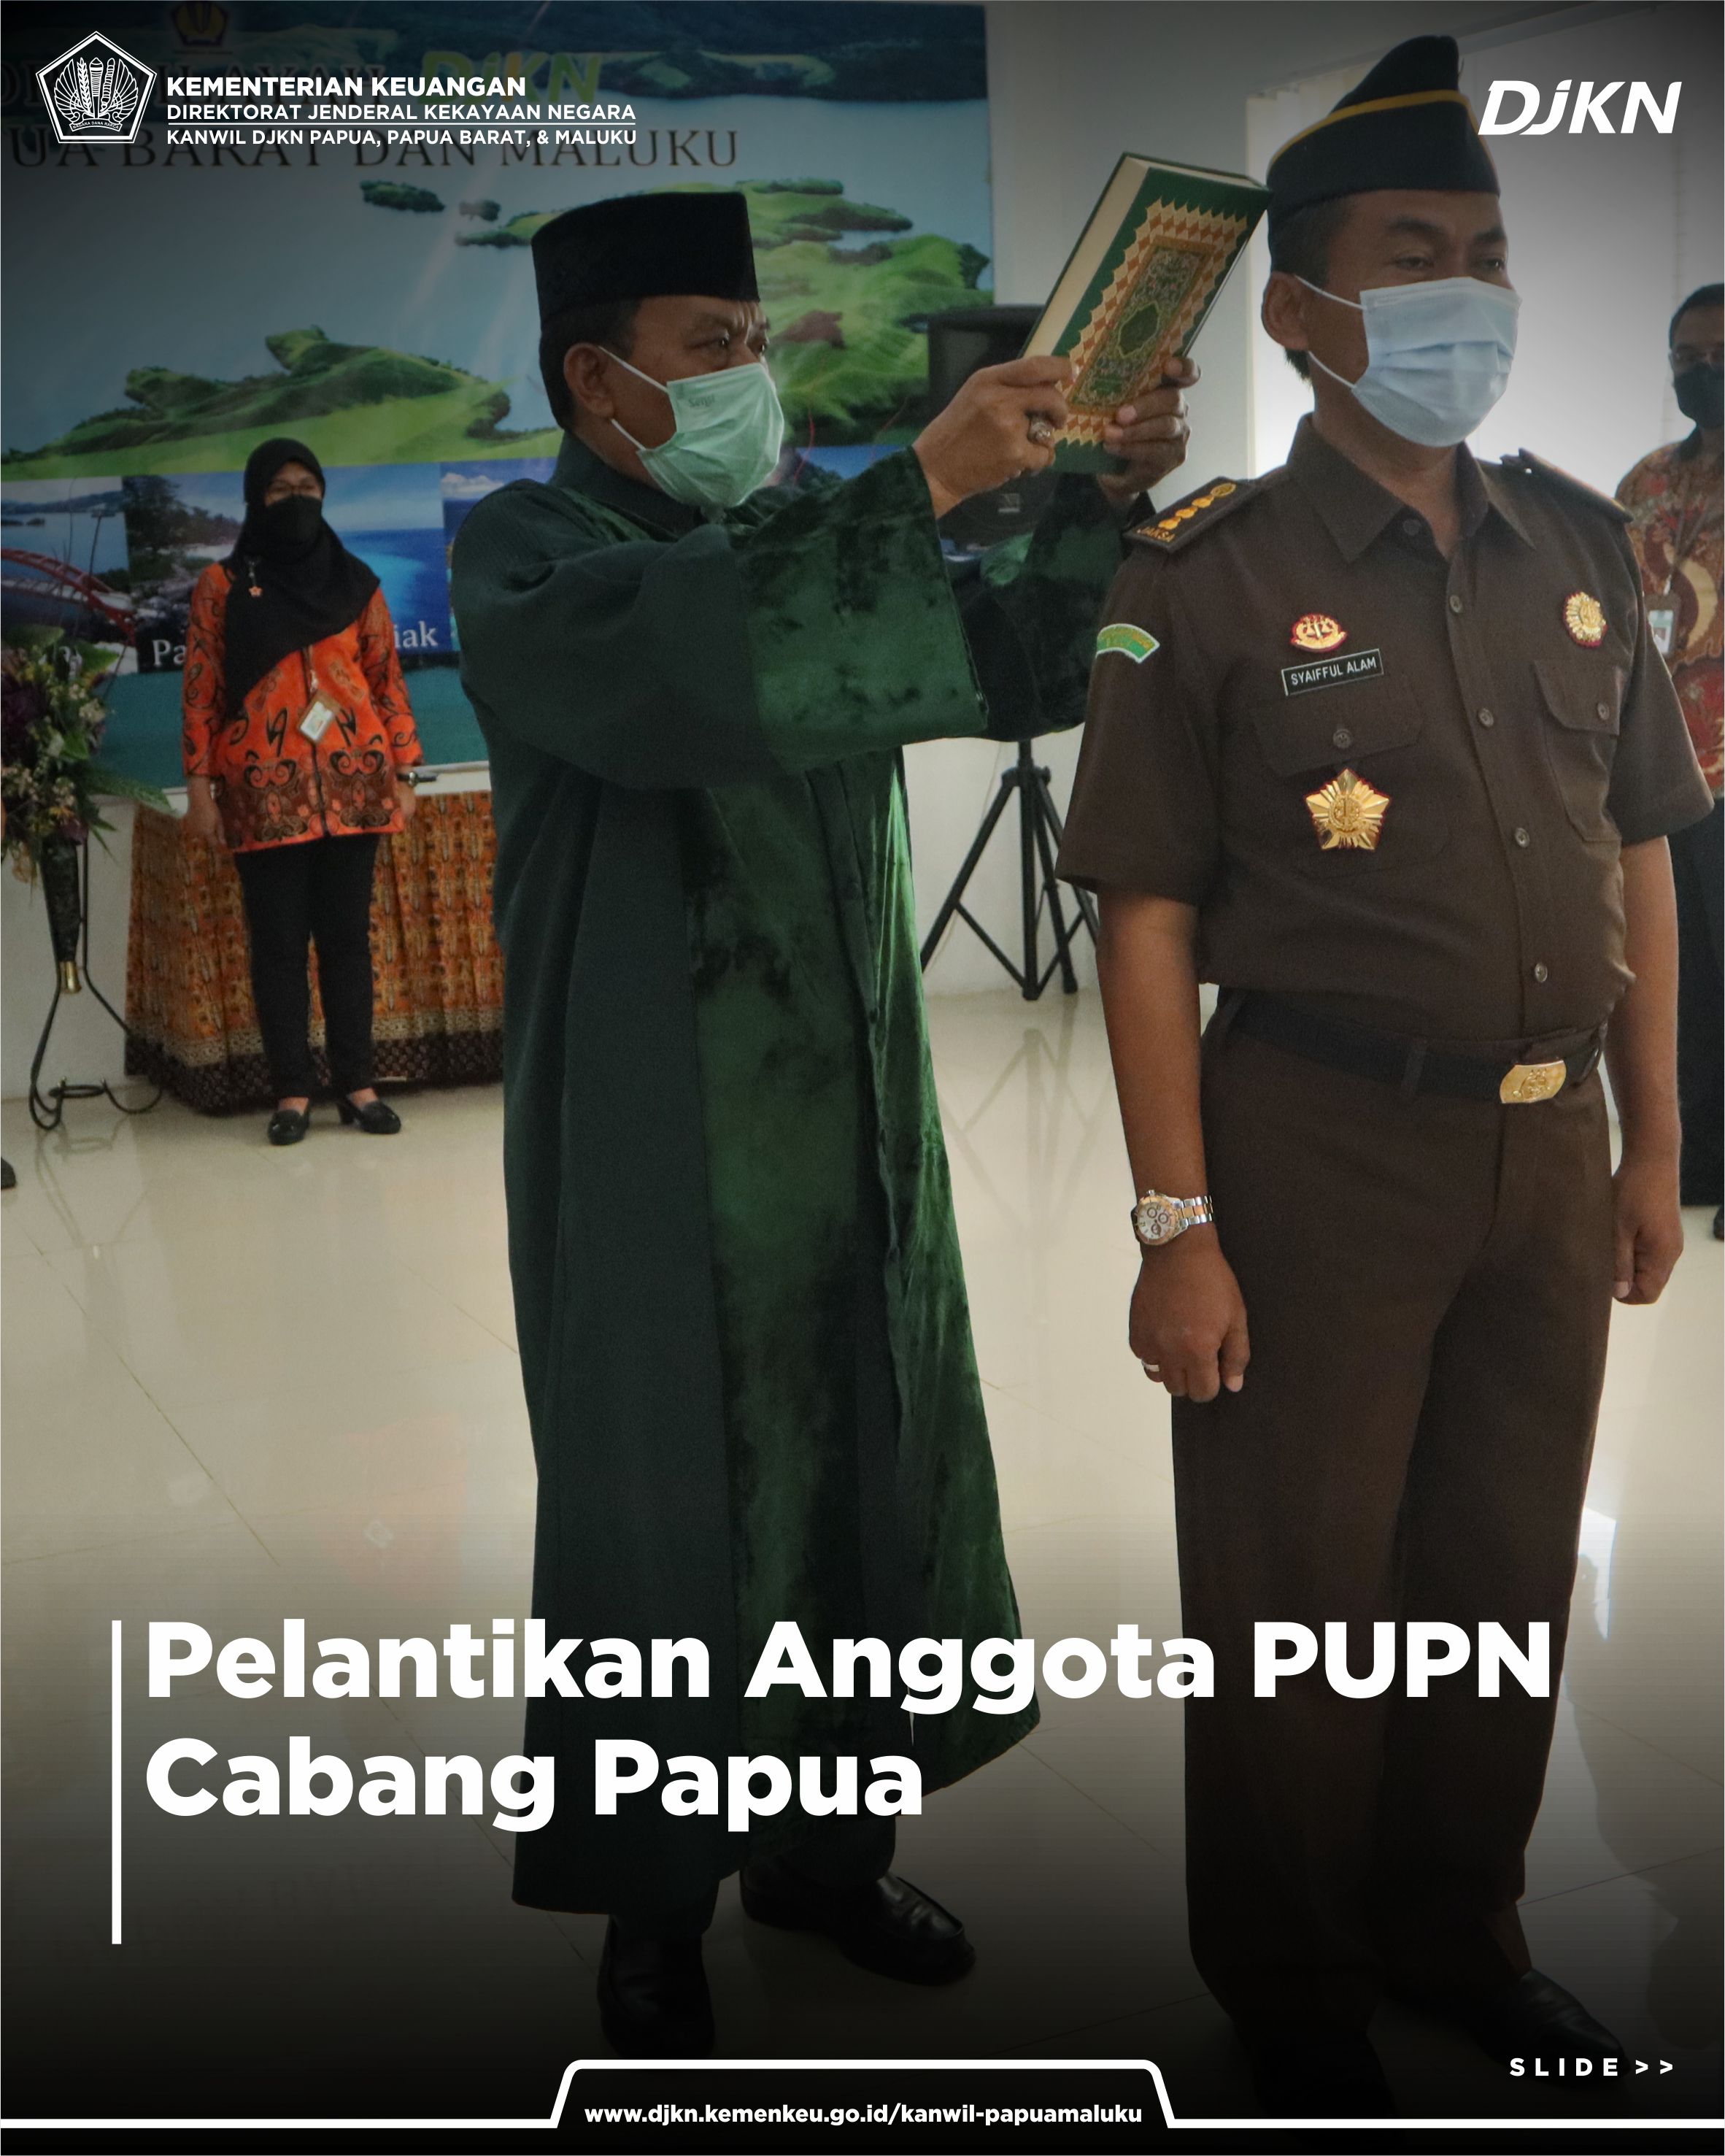 Pelantikan Anggota PUPN Cabang Papua